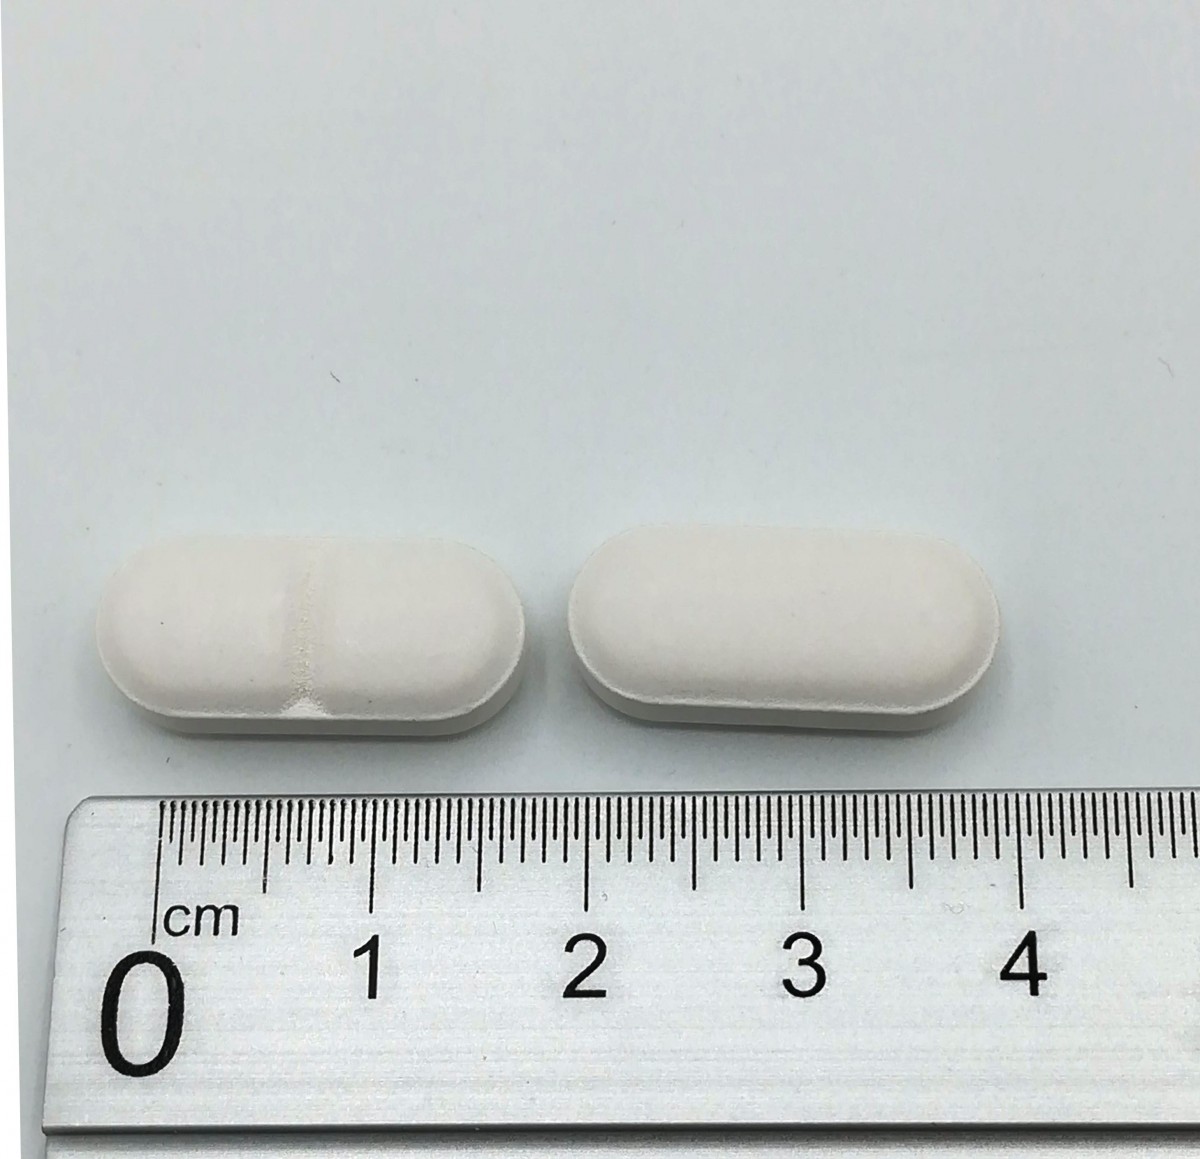 AMOXICILINA/ACIDO CLAVULANICO NORMON 500 mg /125 mg COMPRIMIDOS RECUBIERTOS CON PELICULA EFG, 500 comprimidos fotografía de la forma farmacéutica.